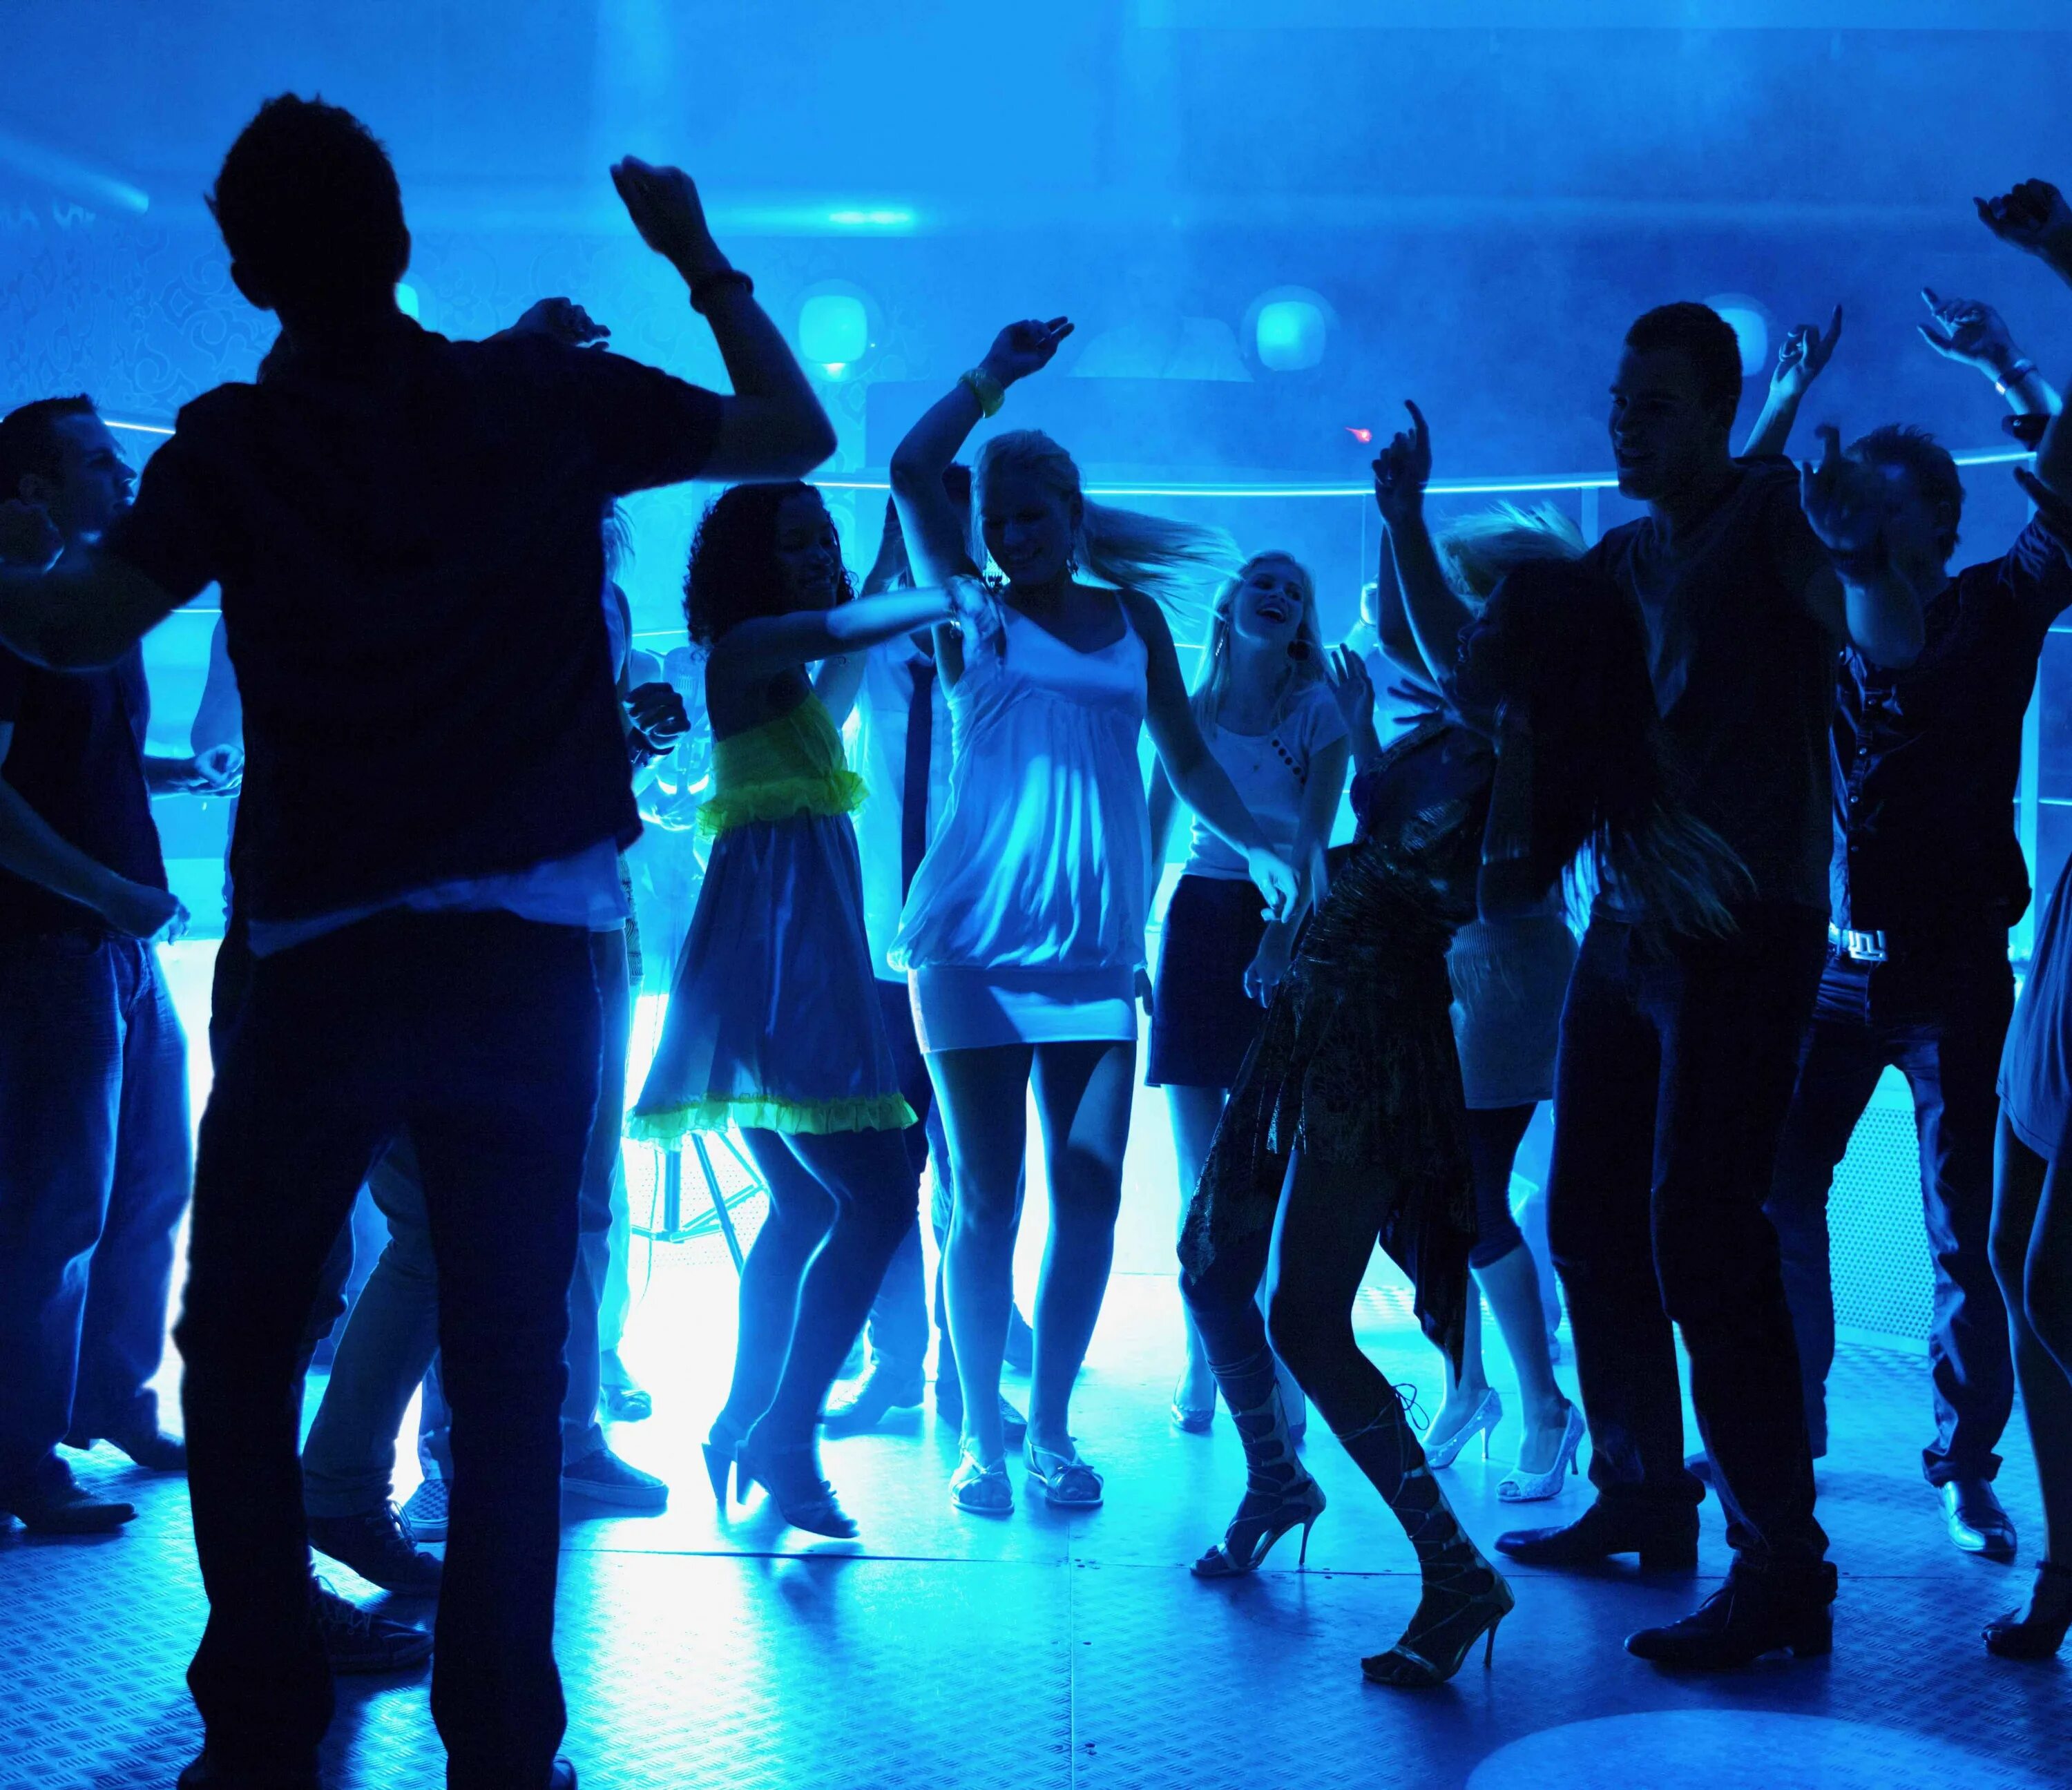 Веселая музыка для дискотеки. Ночная дискотека. Клубные танцы. Танцы в клубе. Люди танцуют на дискотеке.